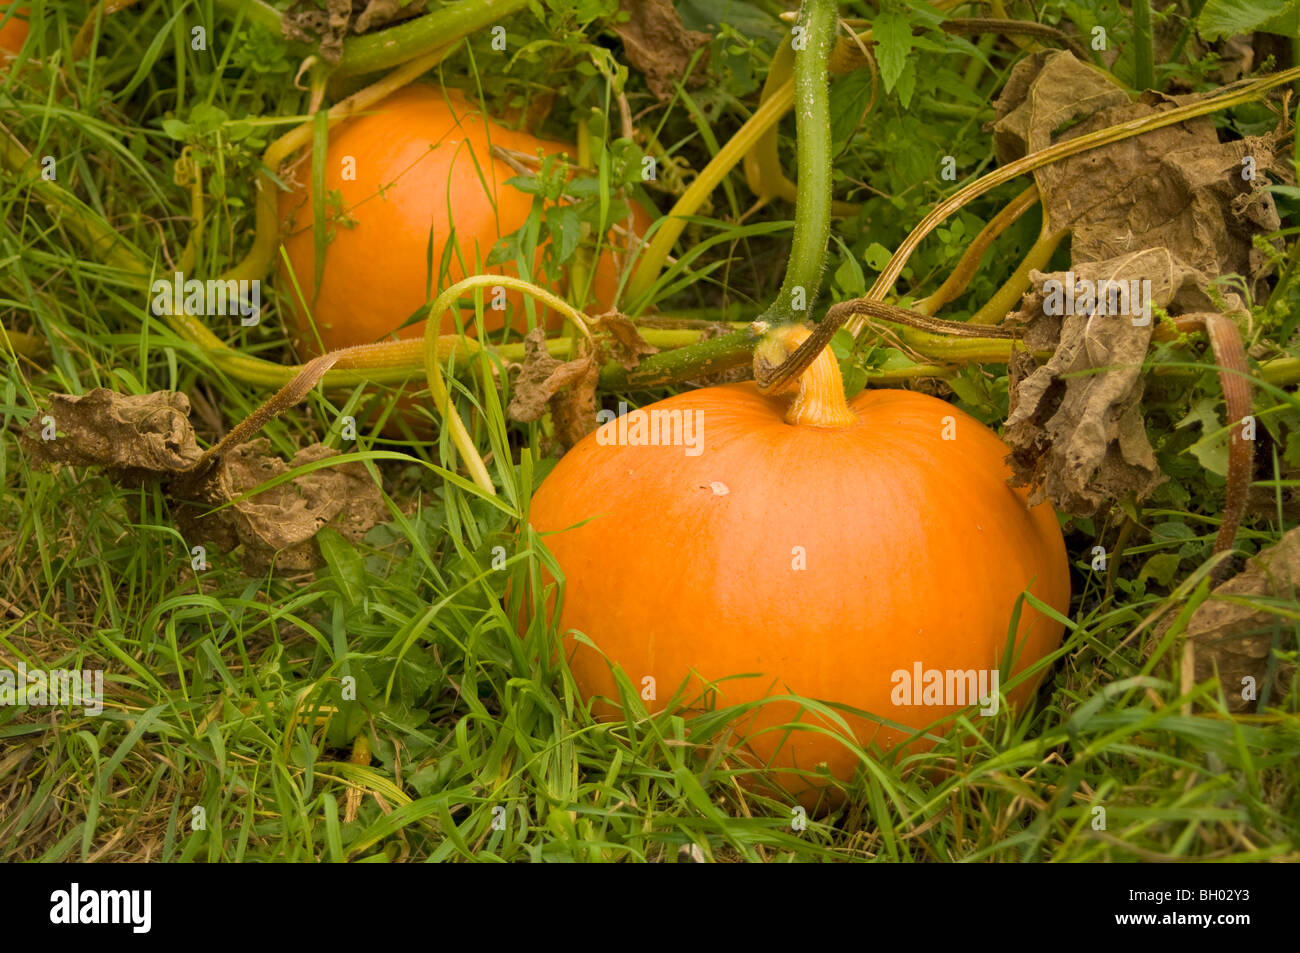 Pumpkin (Cucurbita maxima) growing in the grass on an allotment plot Stock Photo